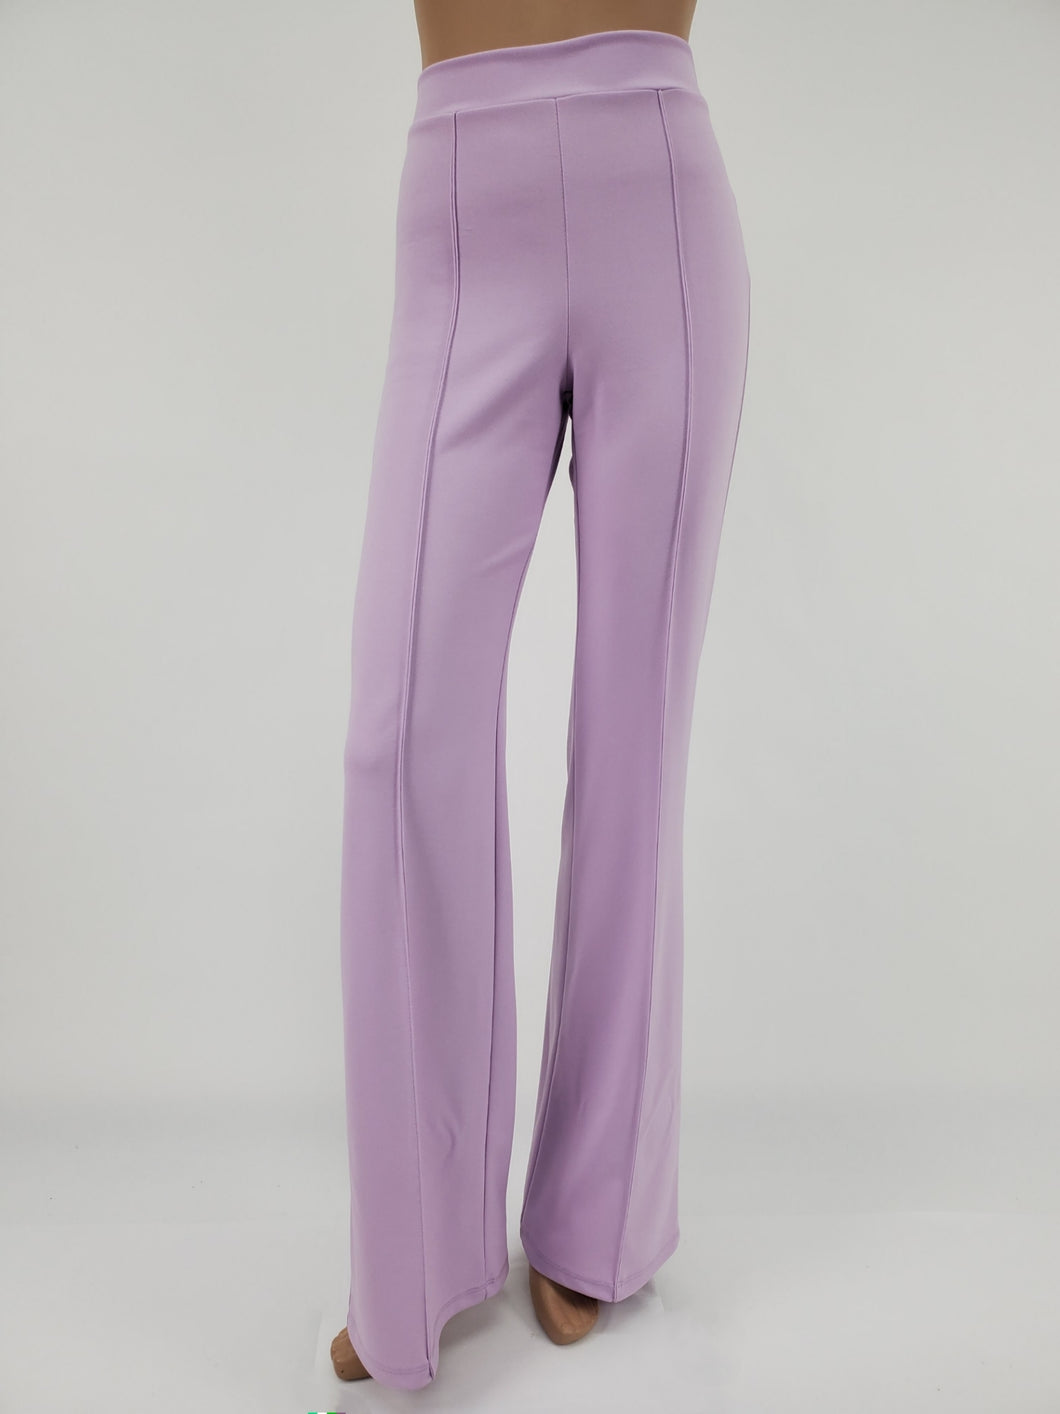 High Waist Front Pintuck Pants with Zipper (Lavender)